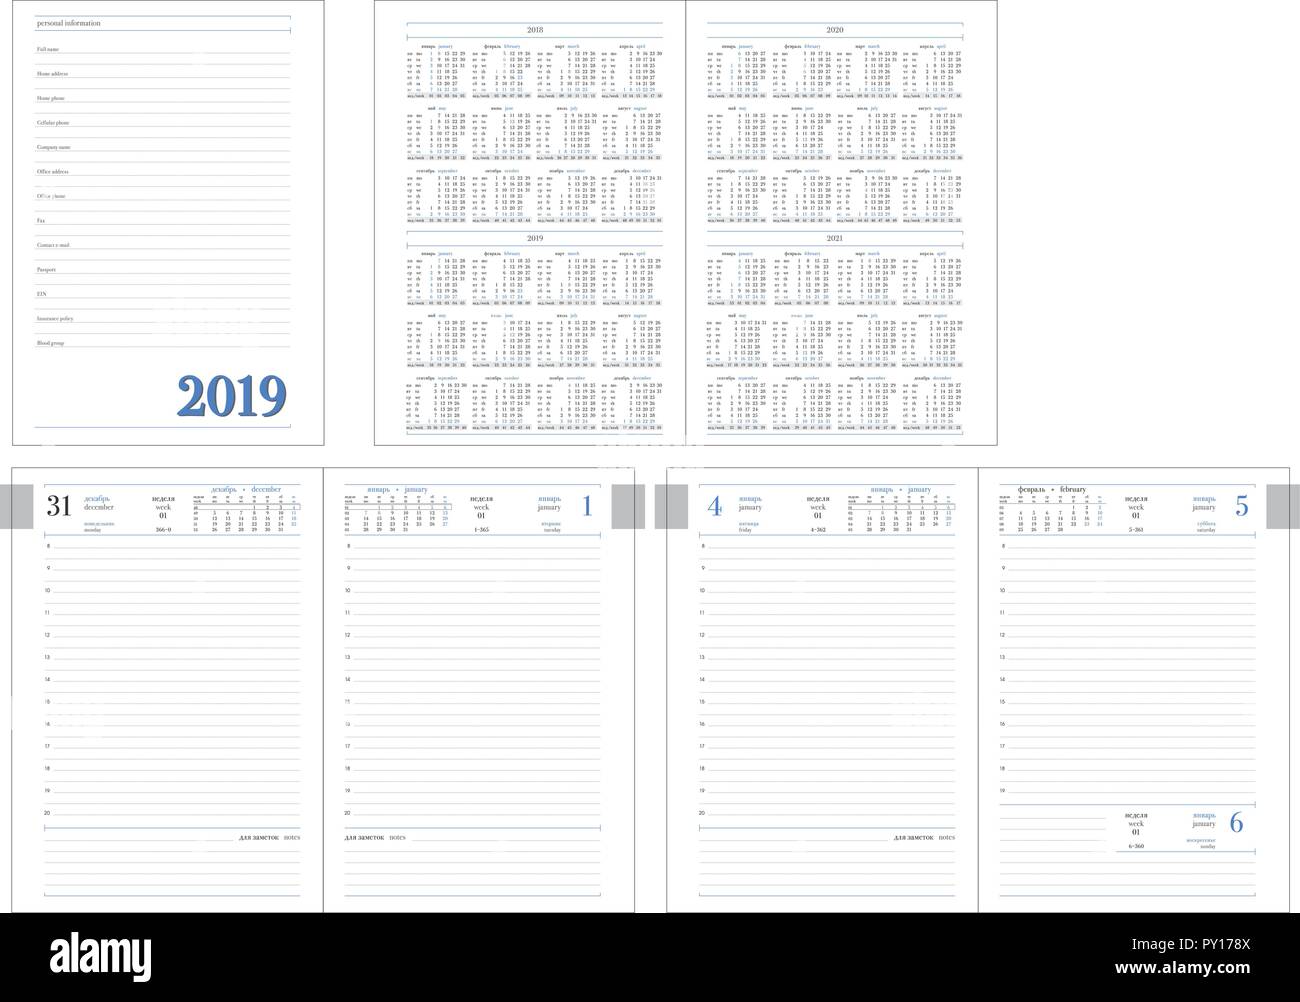 Modèle de mise en page de Planificateur quotidien pour l'année 2019. Bureau Design livre avec les modèles de page, les données personnelles et les données de calendrier sur 2018, 2019, 2020, 2021 ans apportées au programme pour la mise en page Illustration de Vecteur